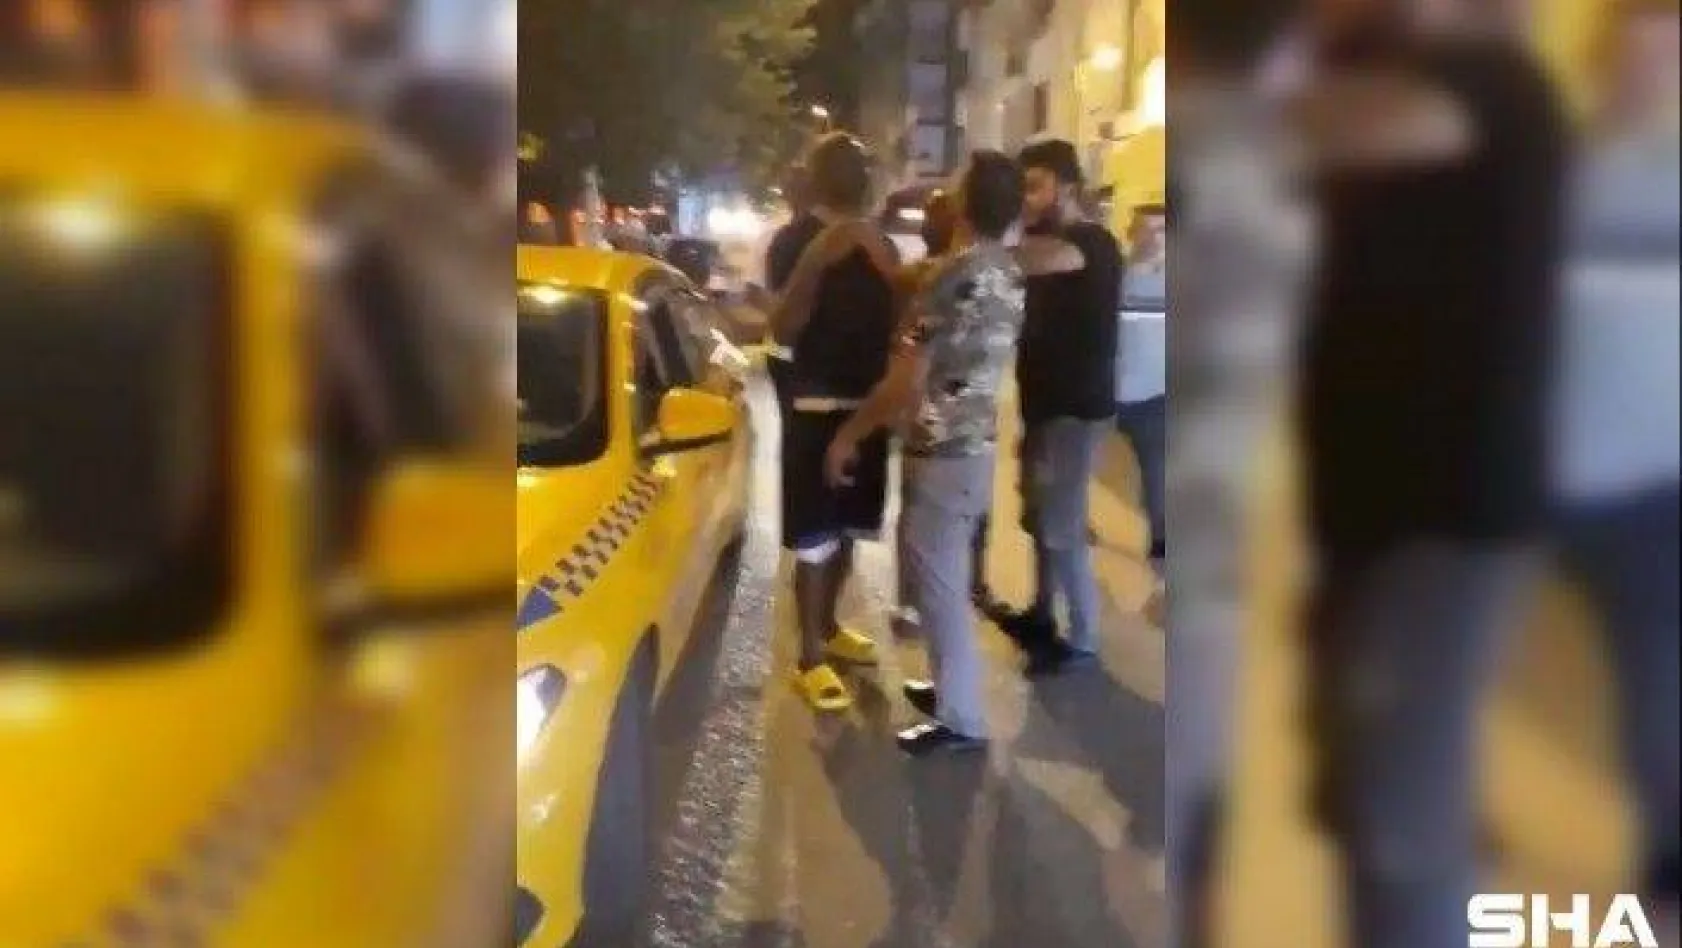 (ÖZEL) Dolandırıldığını düşünen Fransız turistin taksici ile tartışması kamerada